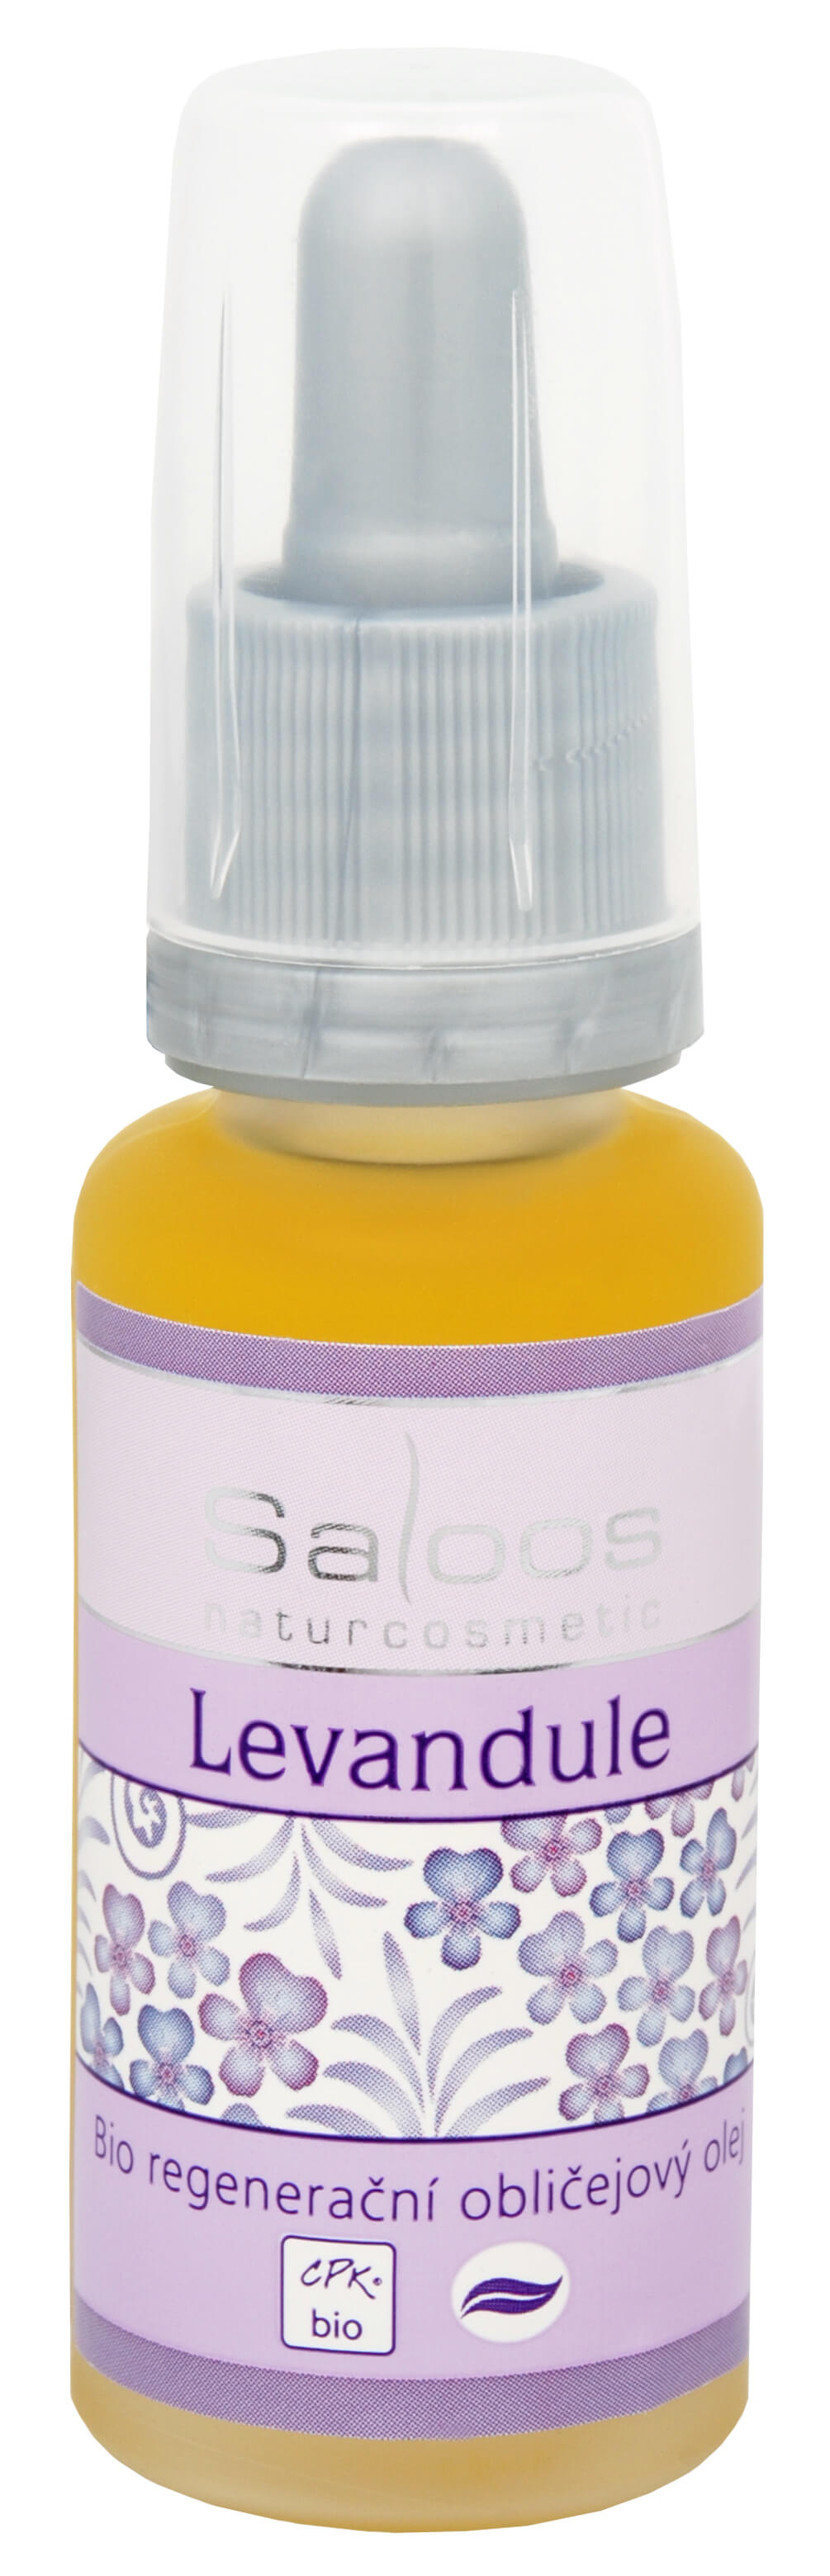 Saloos Bio regenerační obličejový olej - Levandule 100 ml